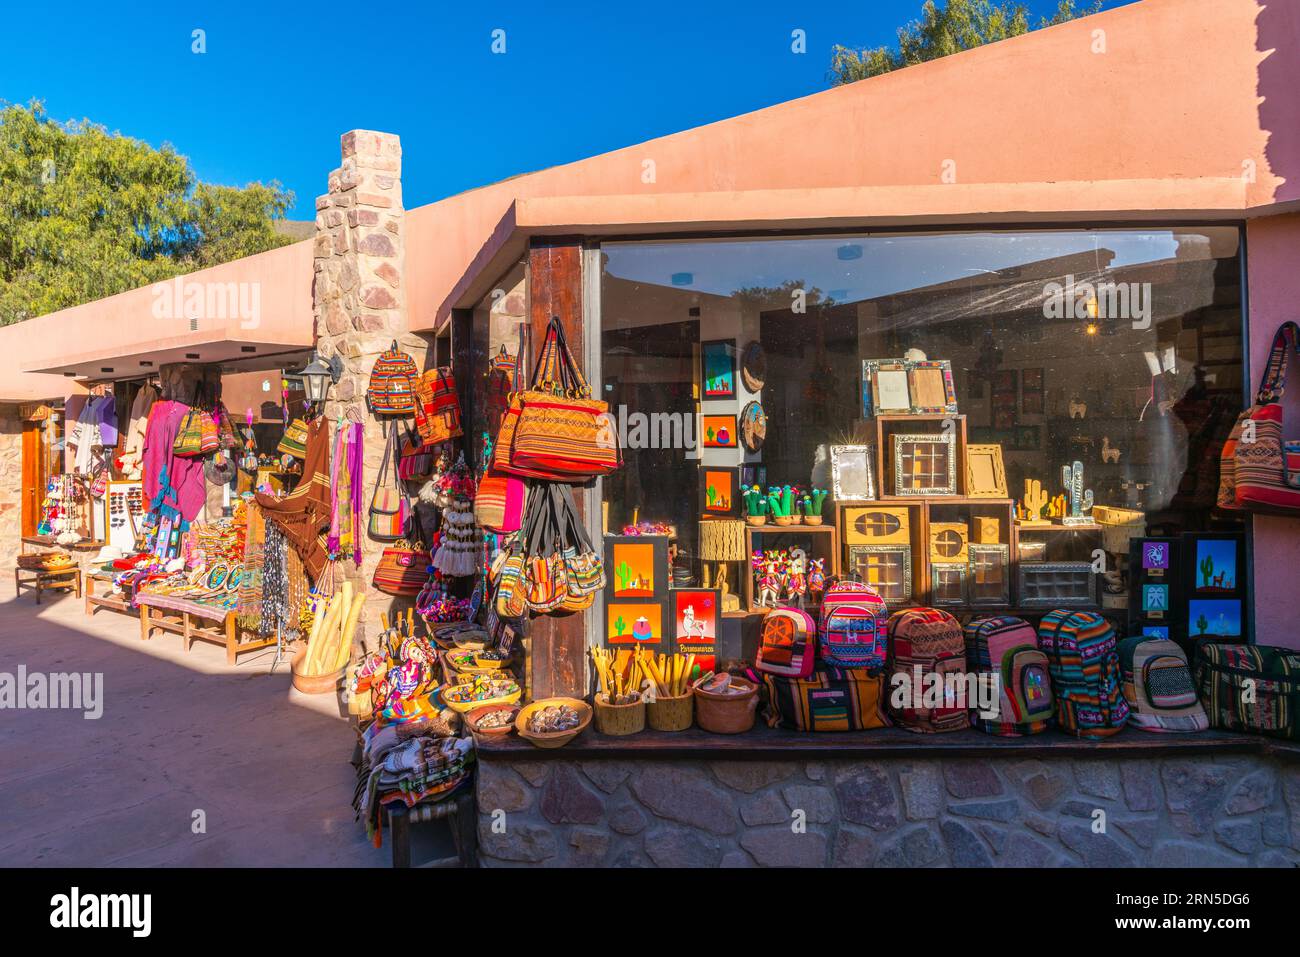 Marché vendant des produits locaux, Purmamarca, Quebrada Humahuaca, site du patrimoine mondial de l'UNESCO, province de Jujuy, maisons en adobe, rue, textiles, boutique Banque D'Images